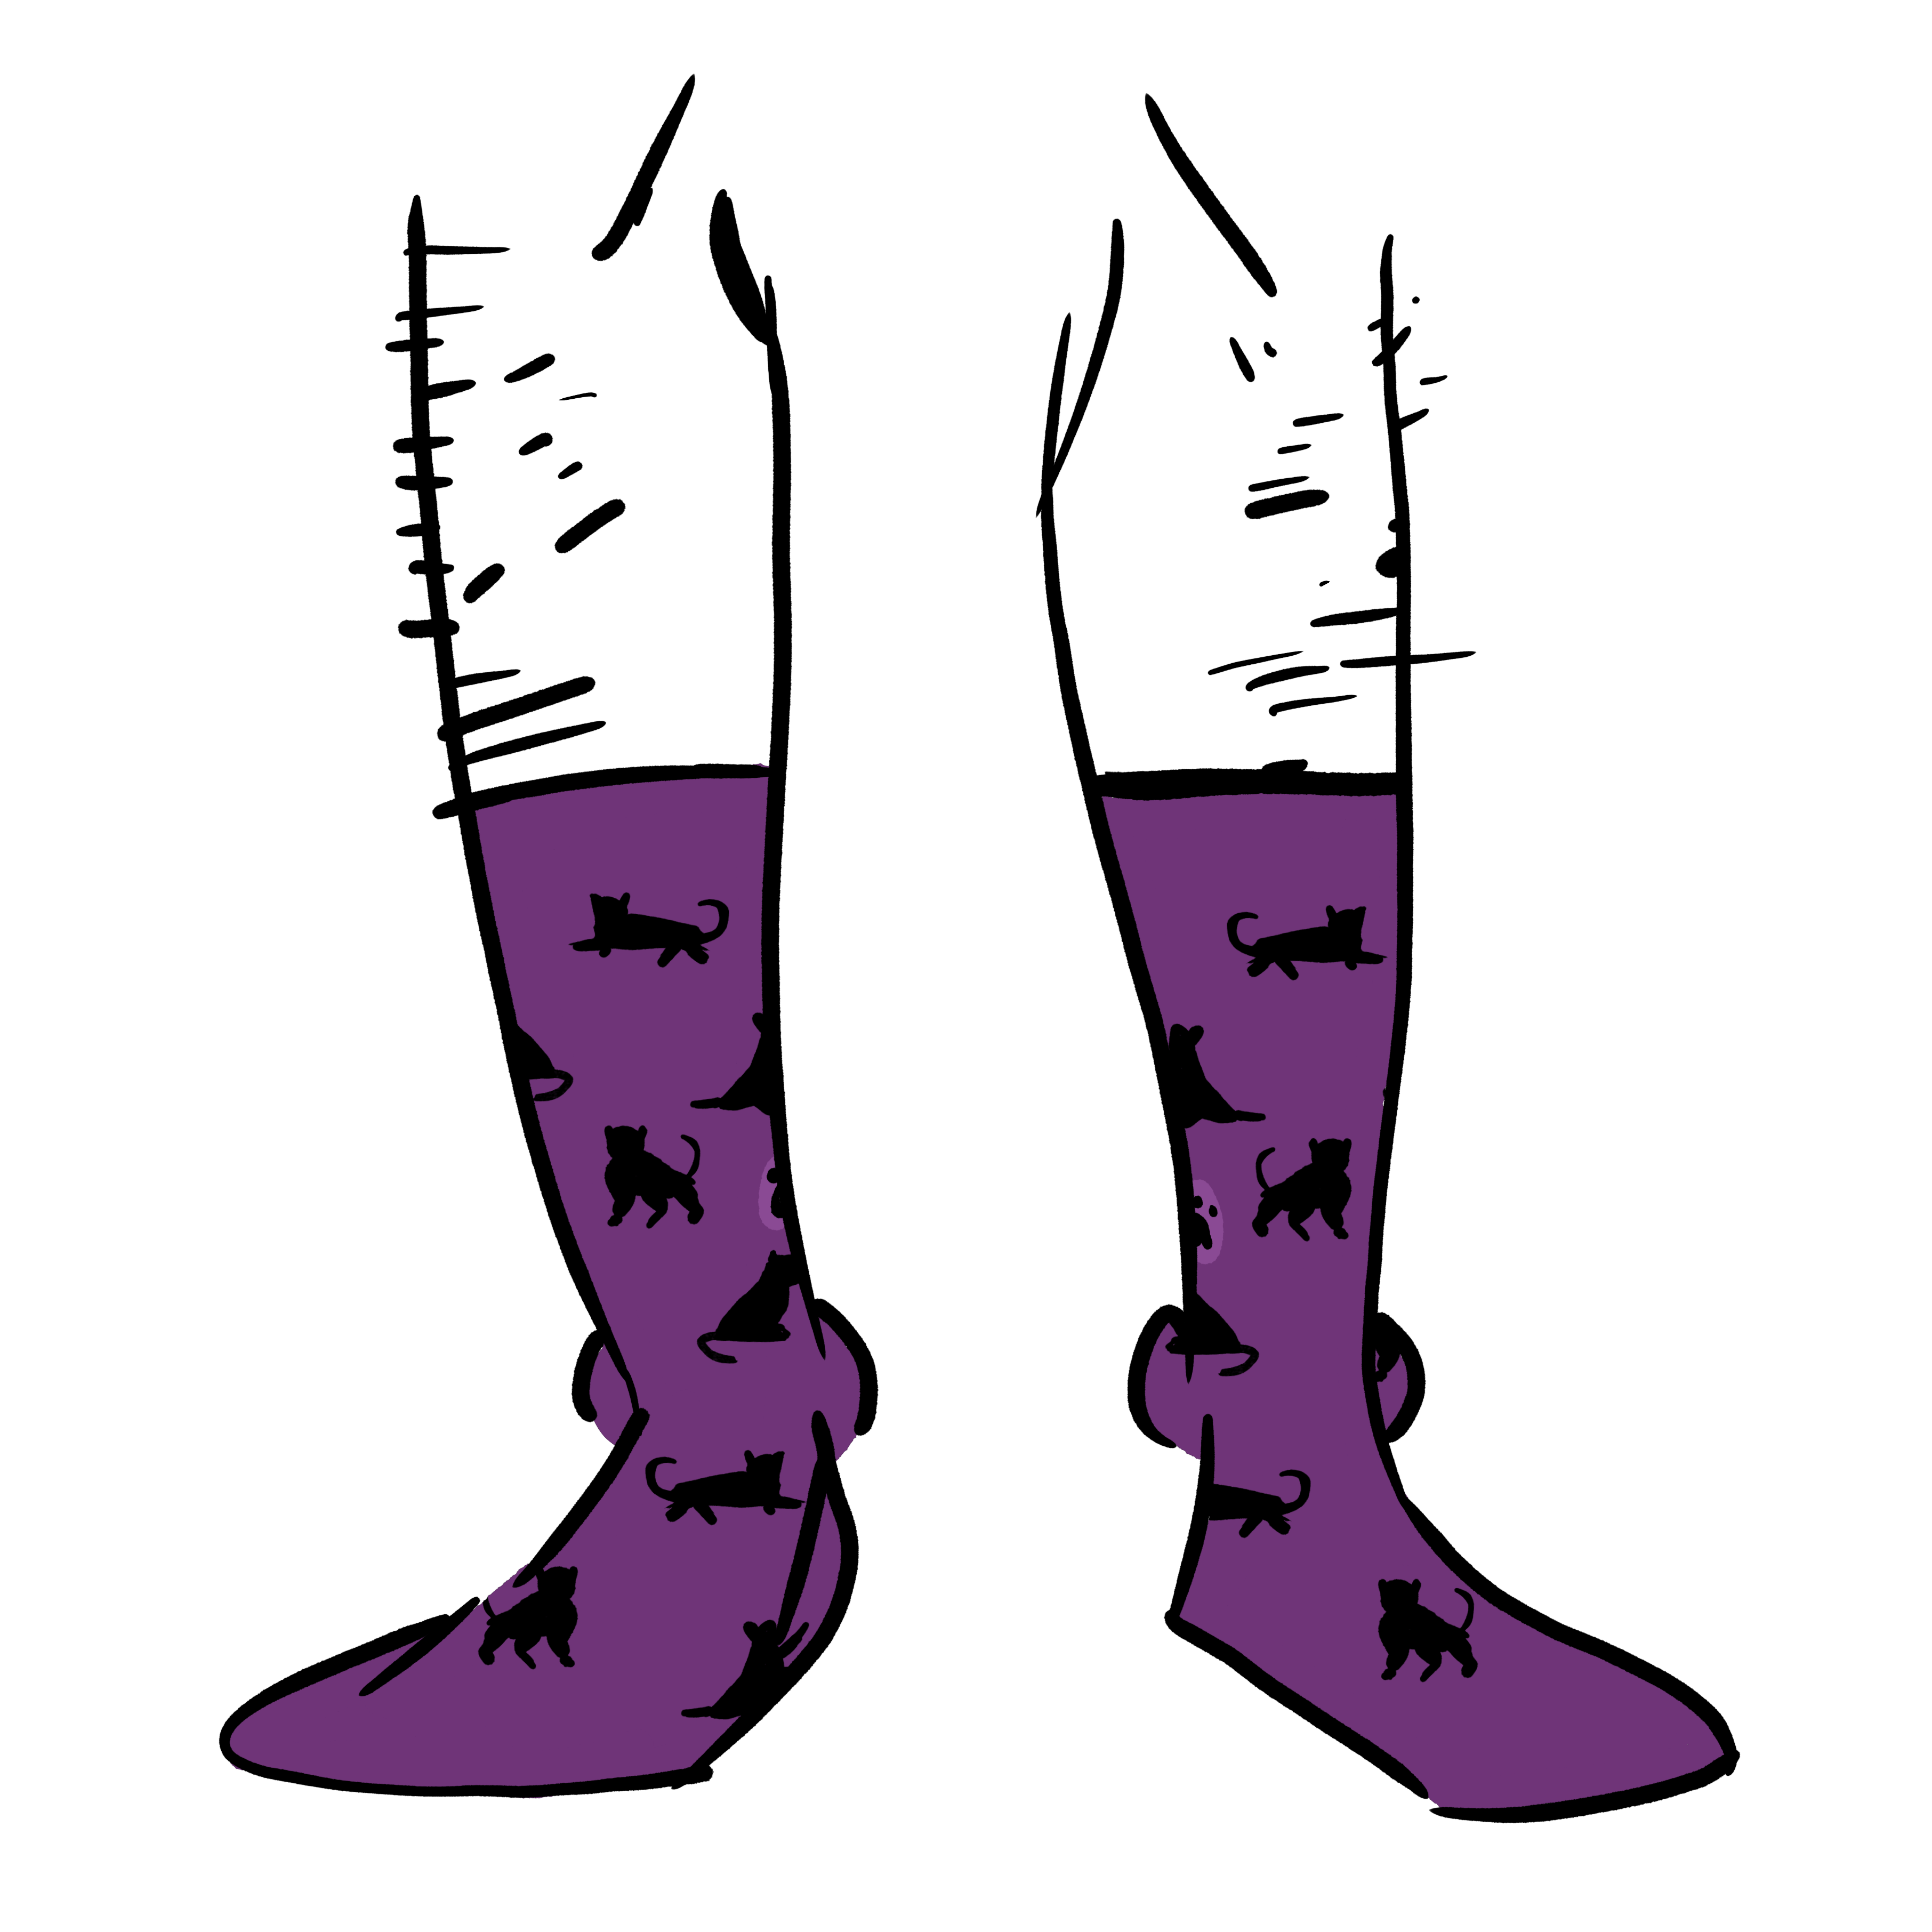 Black cats on purple socks